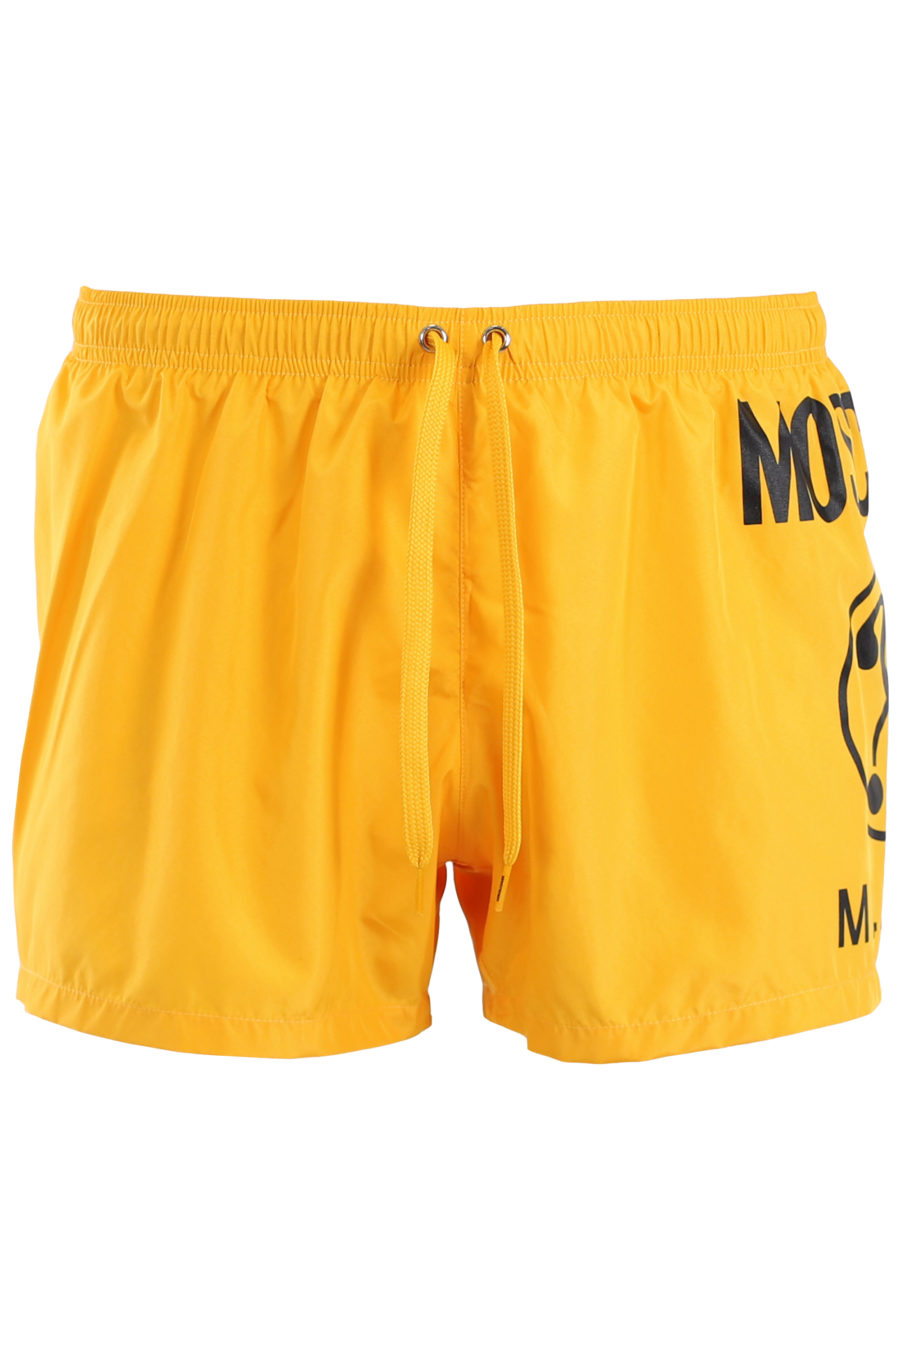 Gelber Badeanzug mit schwarzem Logo, doppelseitige Frage - IMG 9508